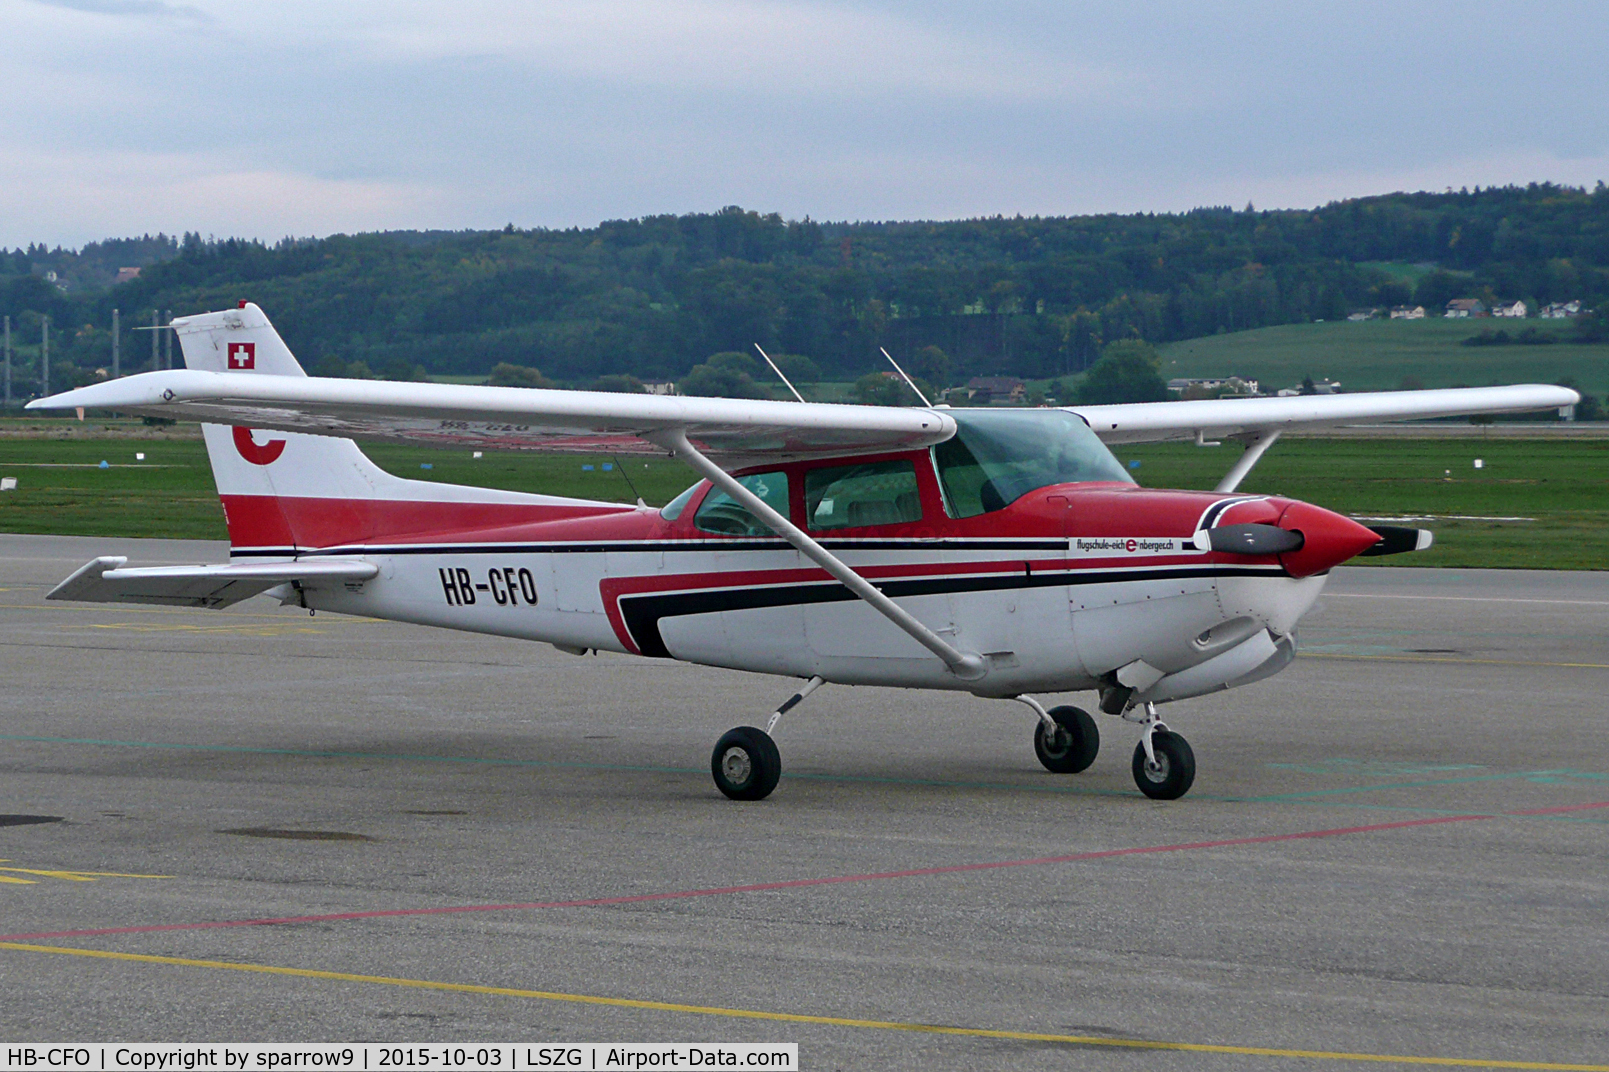 HB-CFO, 1981 Cessna 172RG Cutlass RG Cutlass RG C/N 172RG0804, Again at Grenchen. New paint?